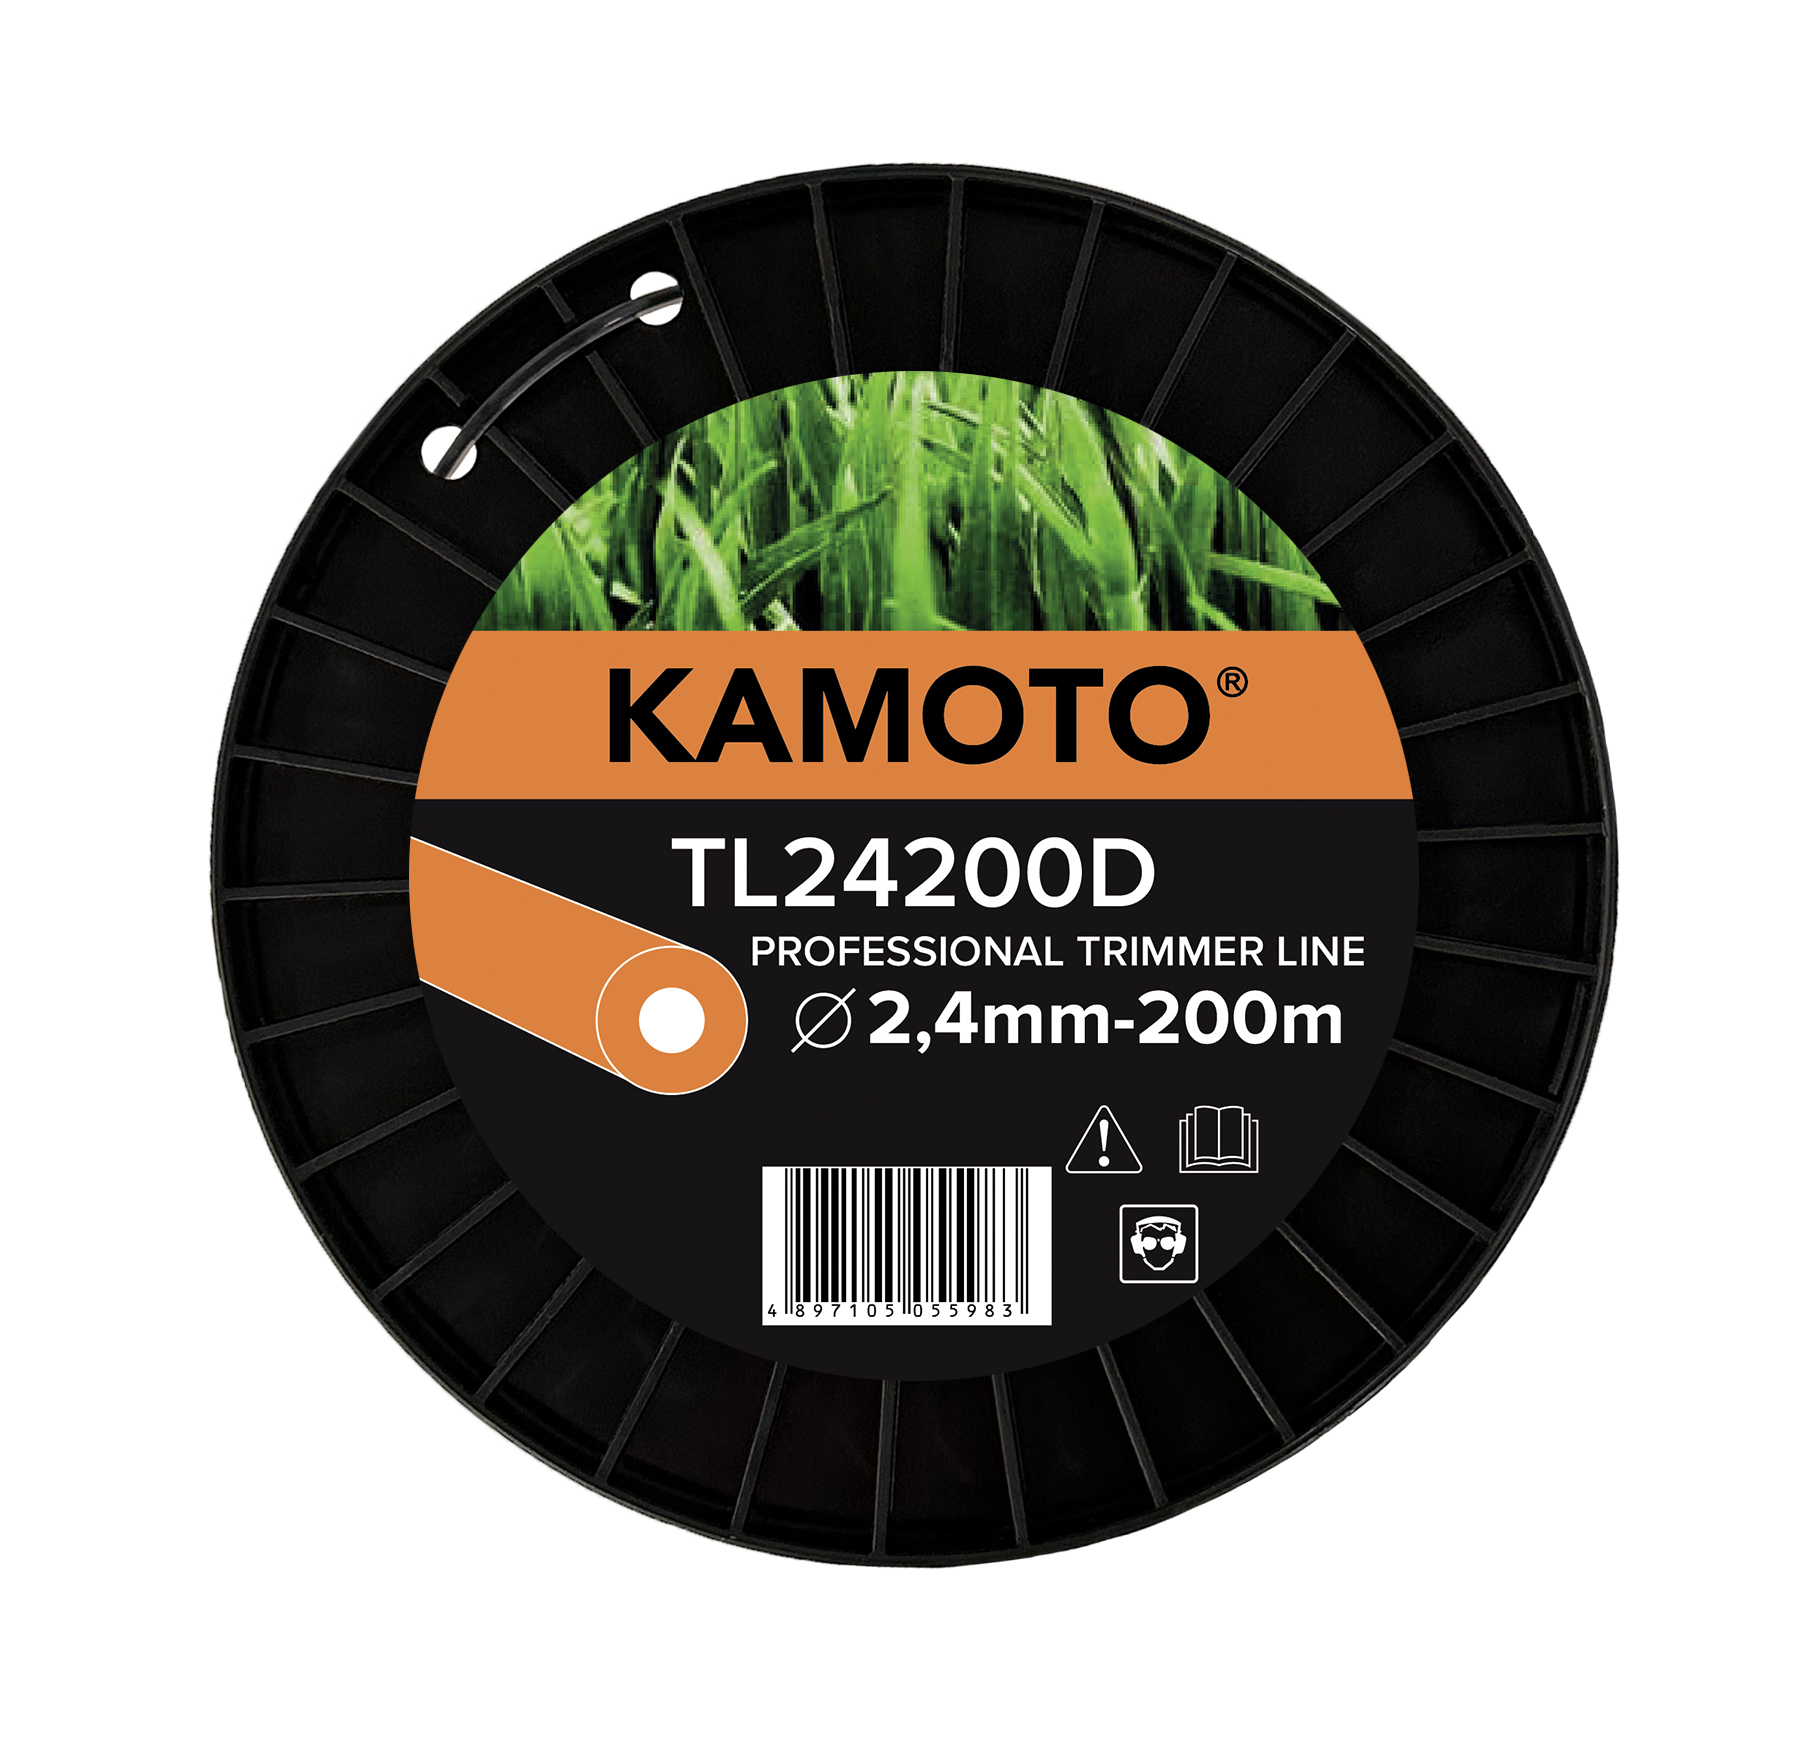 Леска Kamoto TL24200D, круглая, 2.4мм x 200м